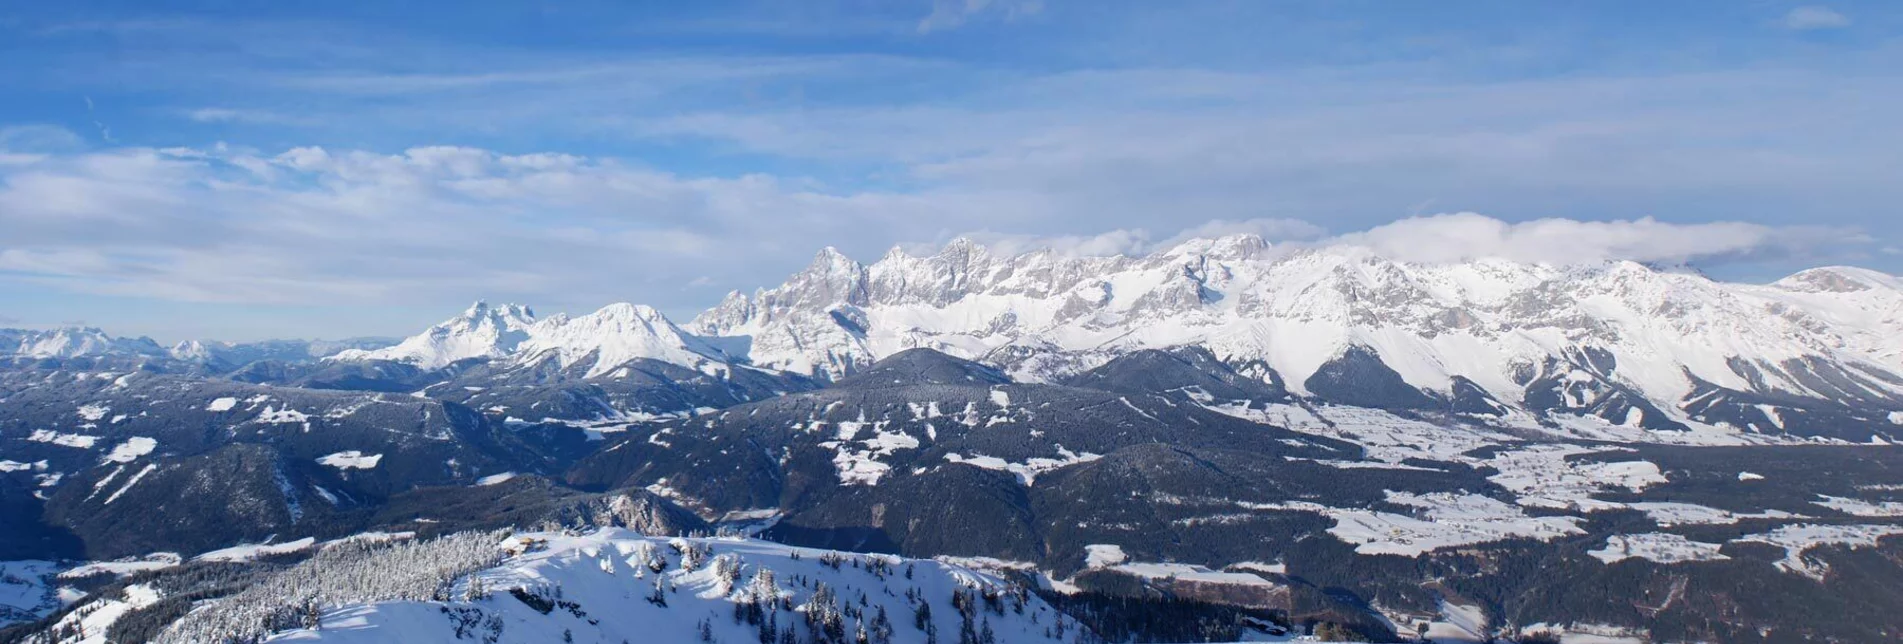 Schneeschuh Schneeschuhtour zur Gasselhöhe - Touren-Impression #1 | © Gerhard Pilz